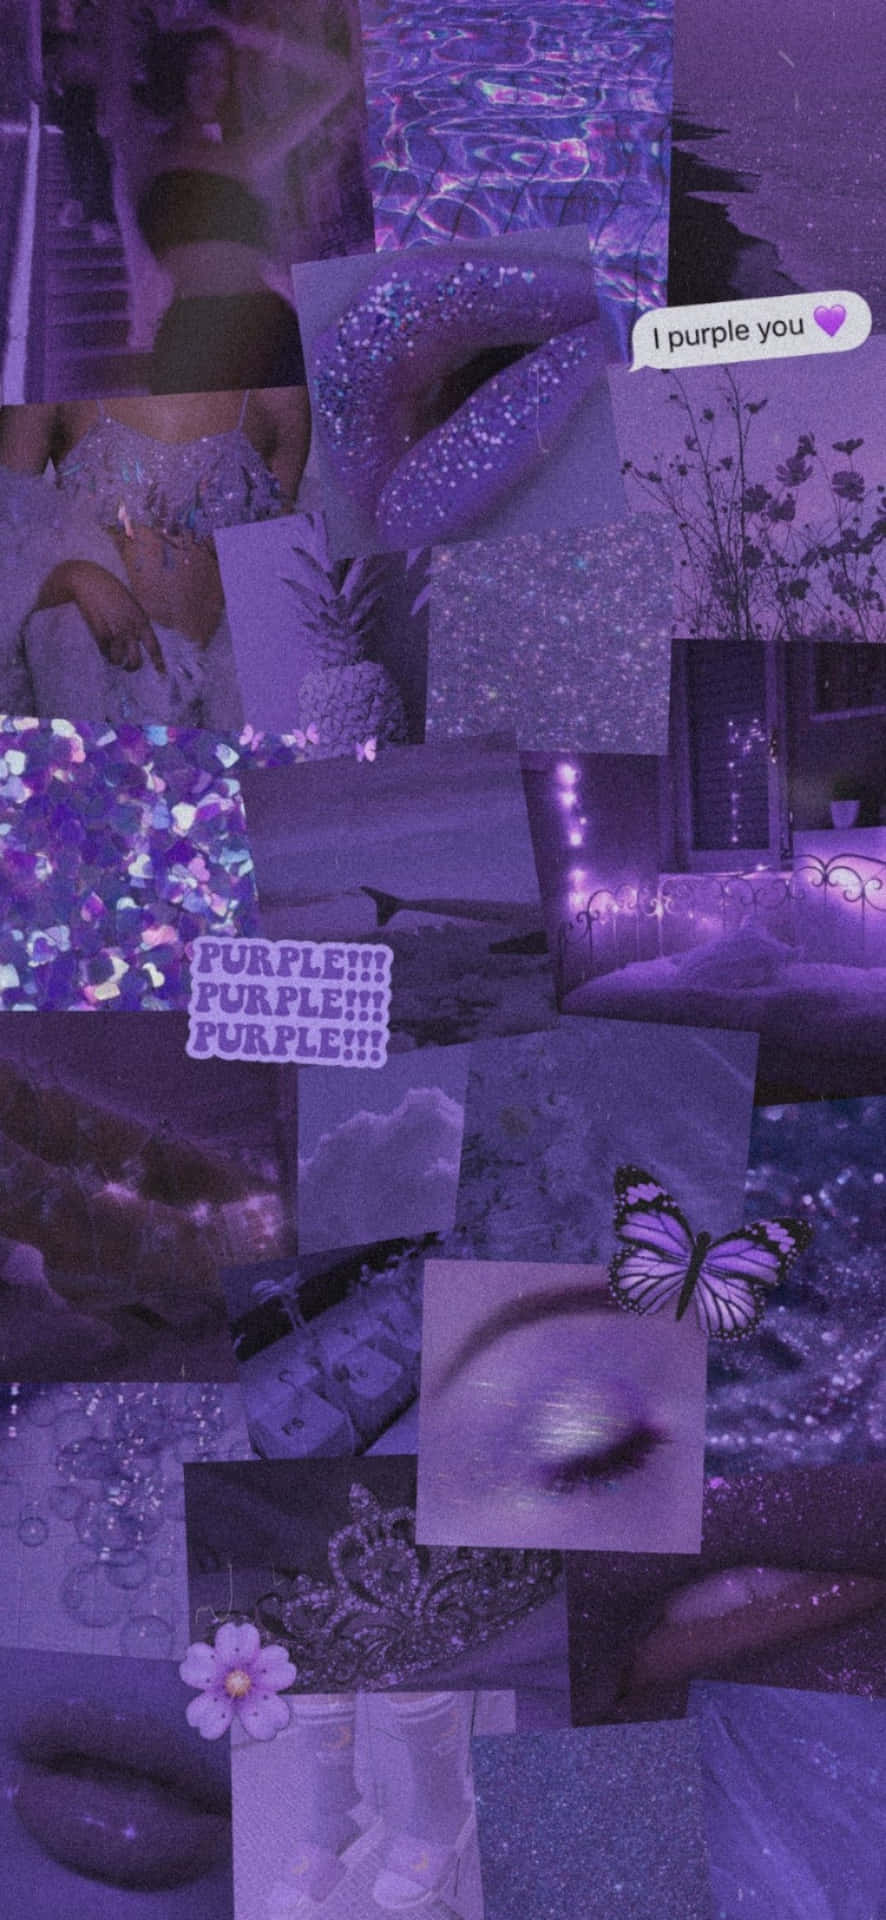 Purple Glitter Collage Aesthetic.jpg Wallpaper